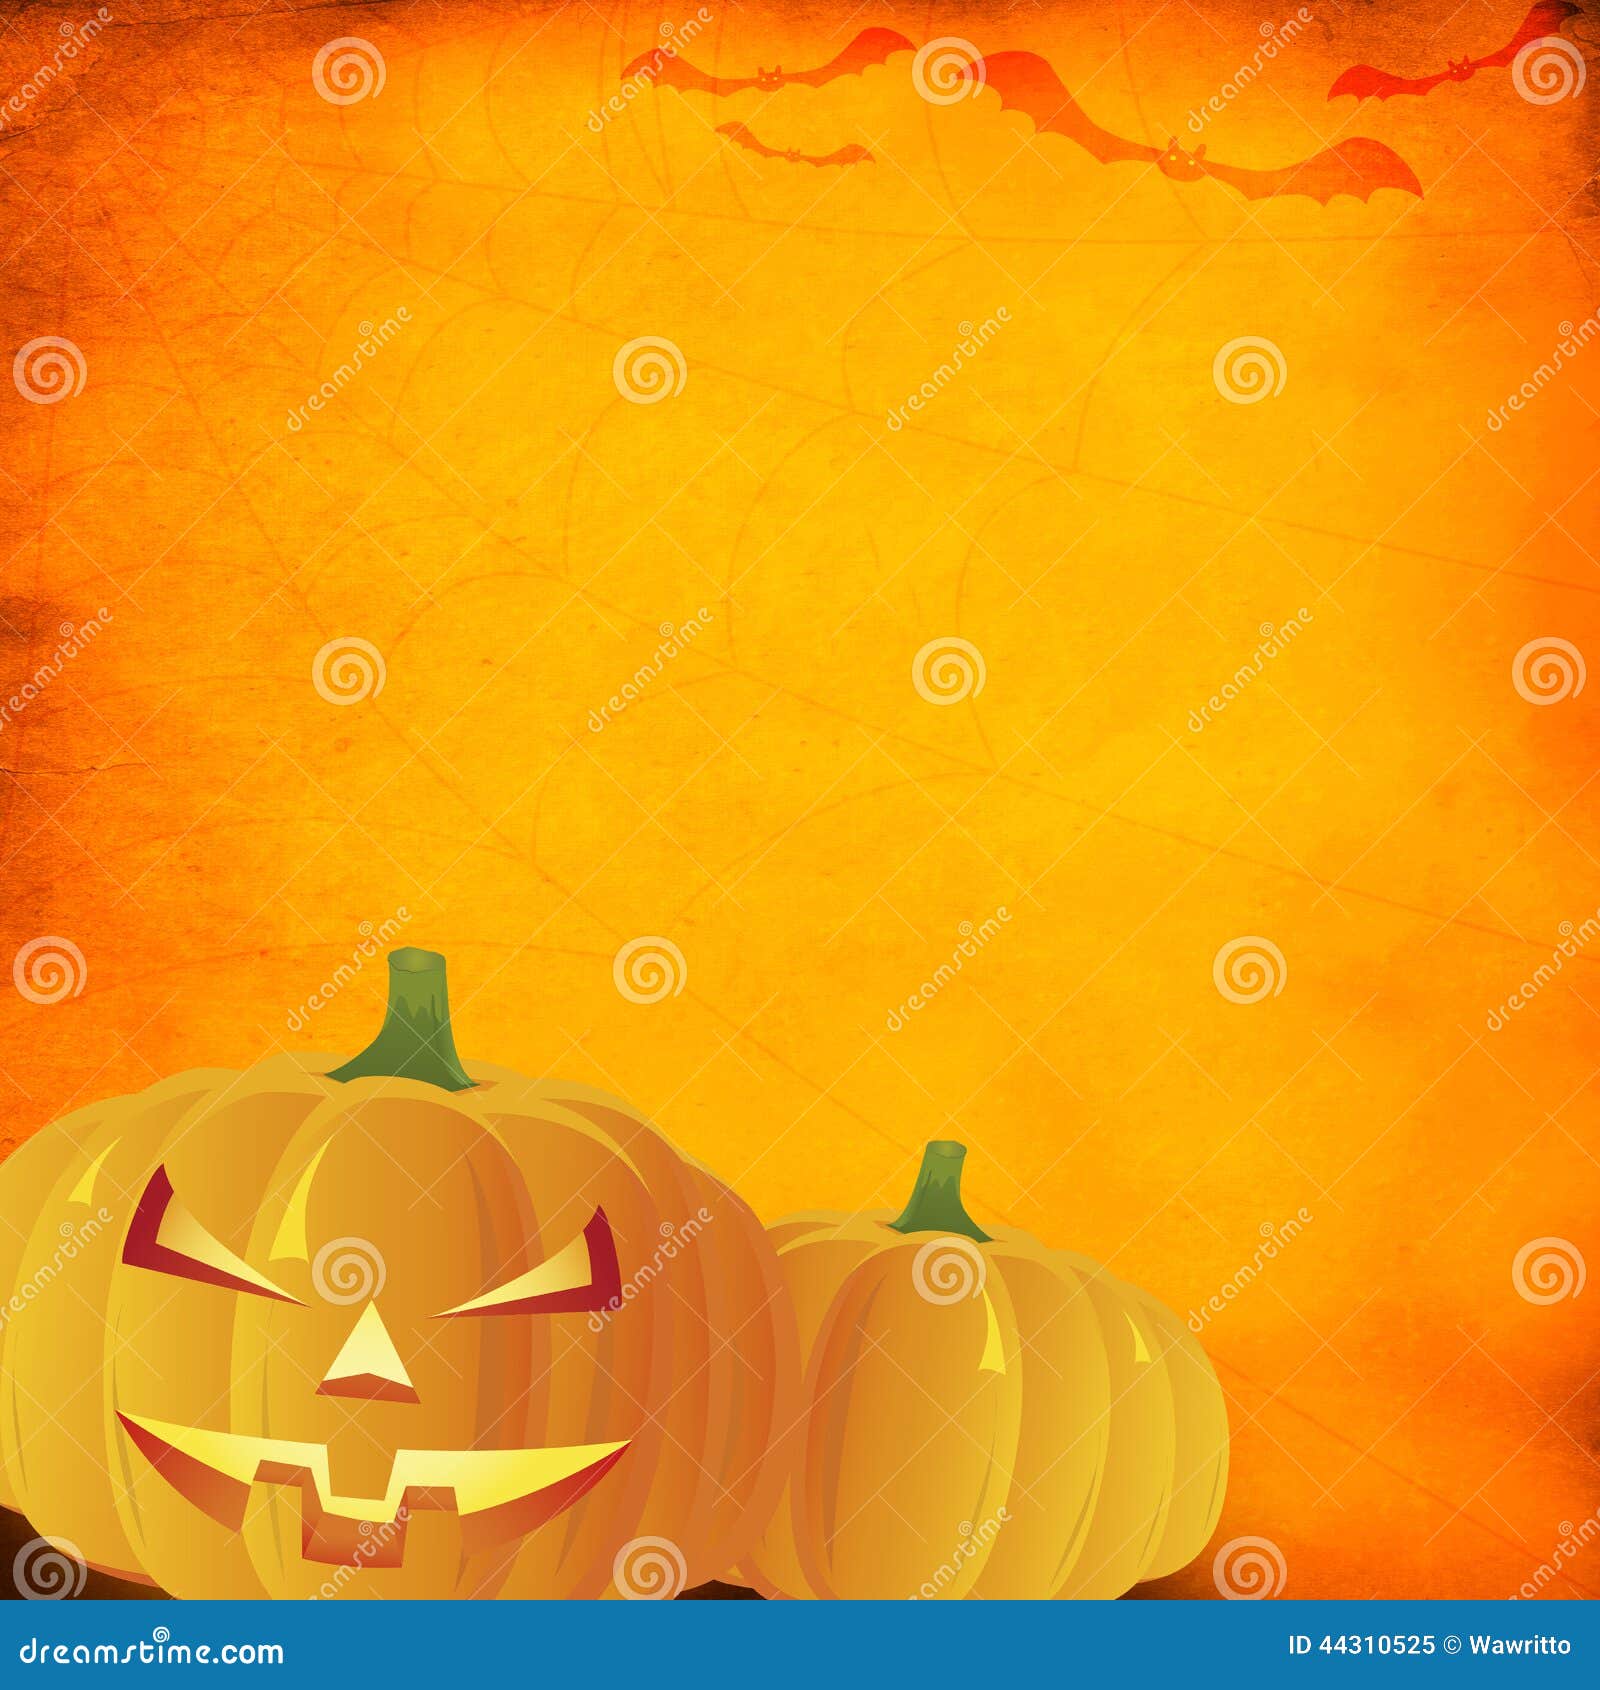 Grunge Orange Halloween Background Stock Image - Image of antique